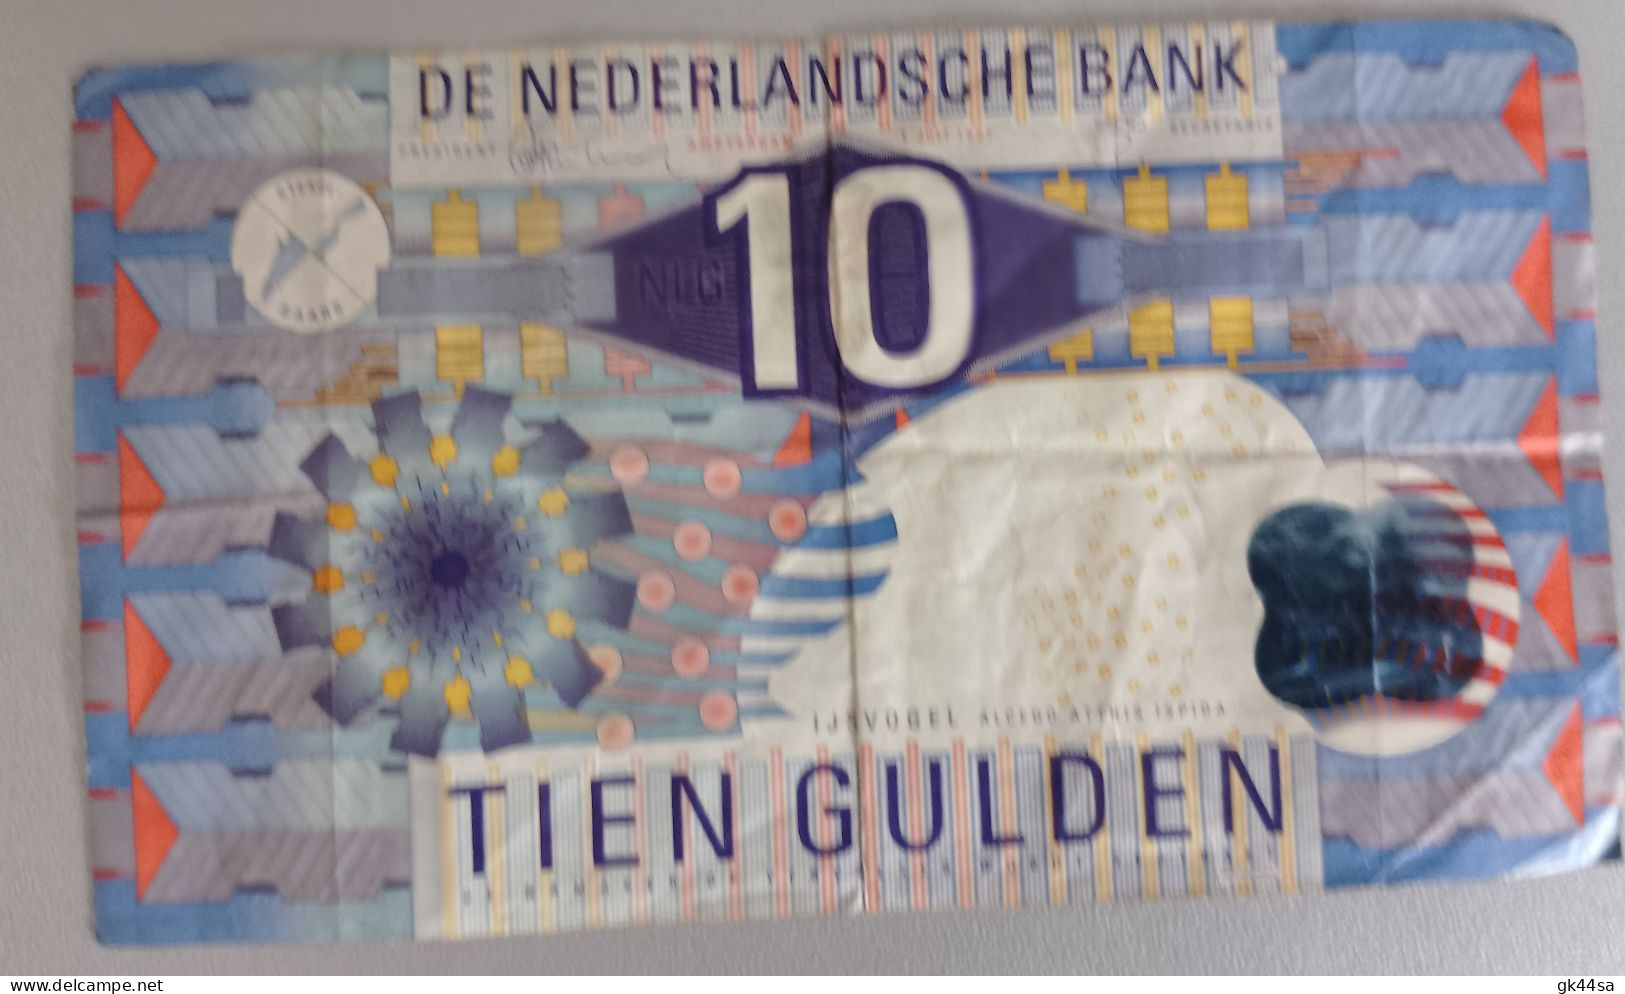 10 TIEN GULDEN - DE NEDERLANDSCHE BANK - AMSTERDAM 1997 - A Identificar